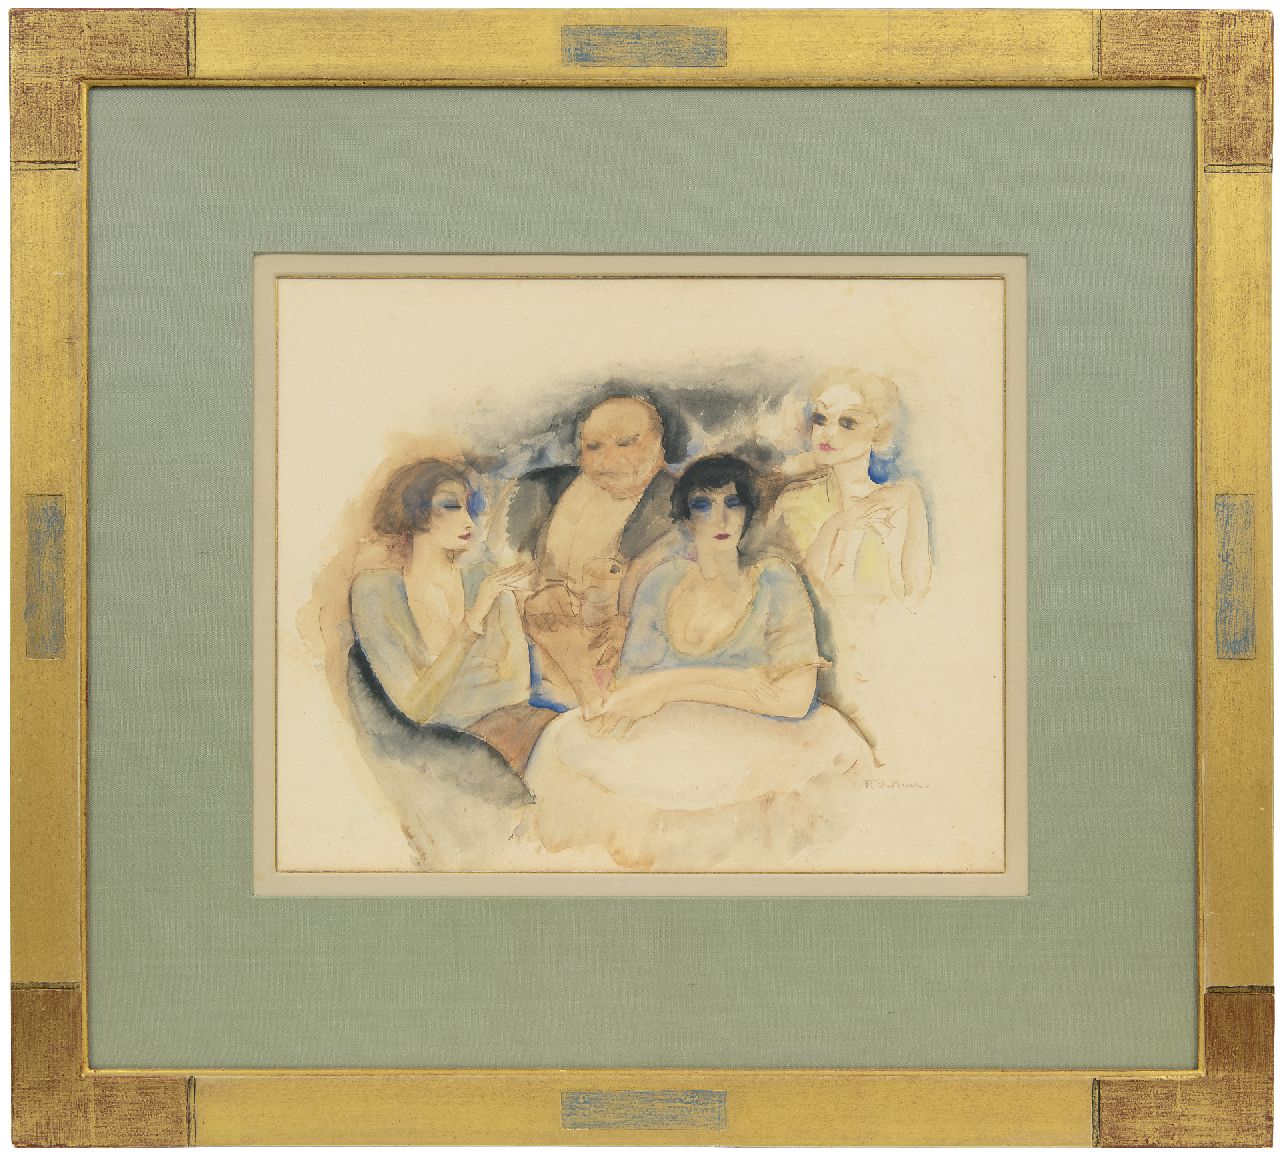 Buck R. de | Raphaël de Buck | Aquarellen en tekeningen te koop aangeboden | In de cocktailbar, aquarel op papier 30,5 x 37,5 cm, gesigneerd rechtsonder